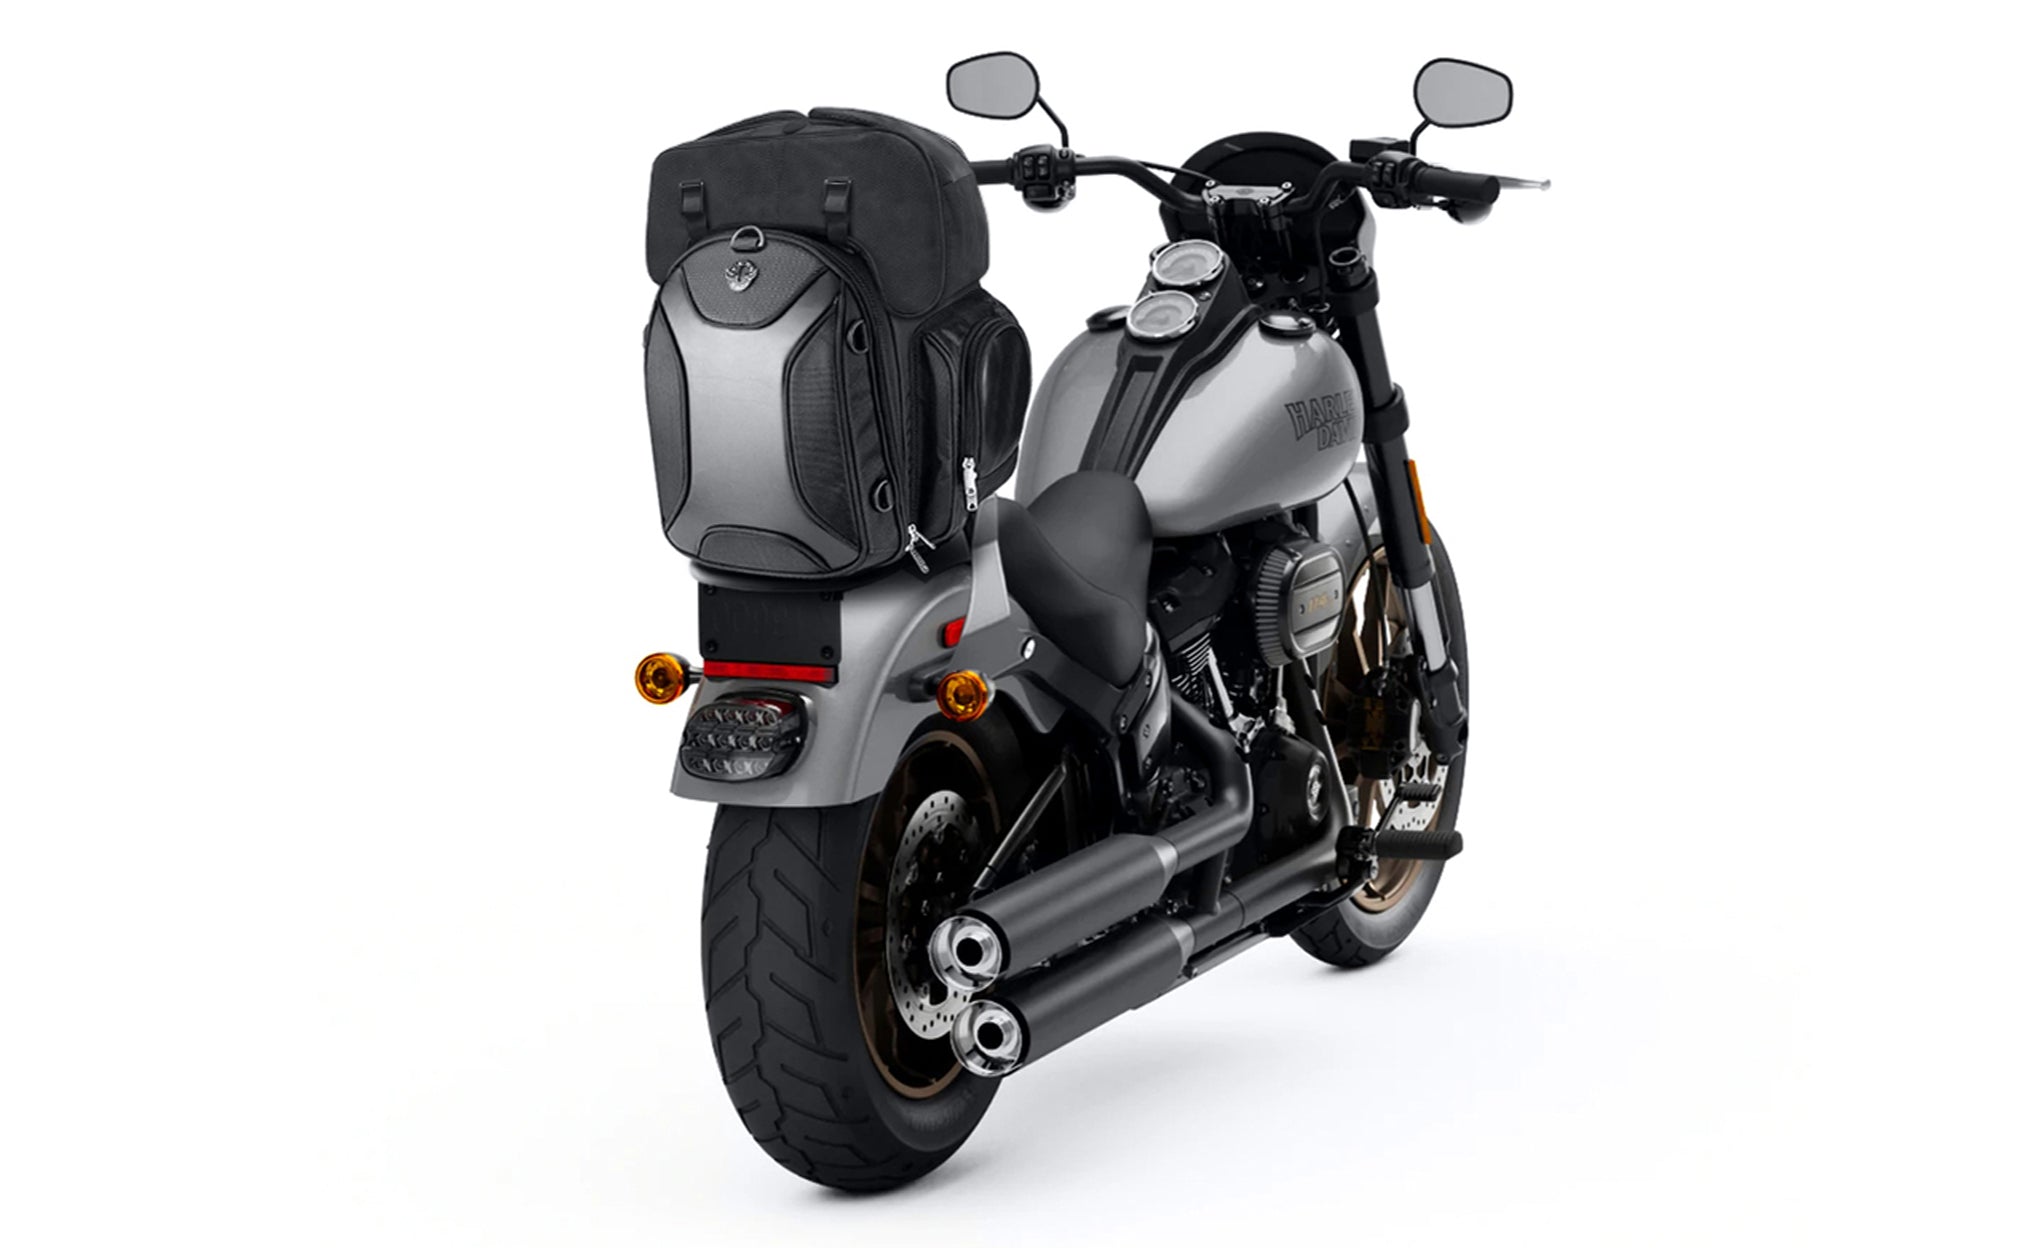 Viking Dagr Extra Large Yamaha Motorcycle Tail Bag Bag on Bike View @expand